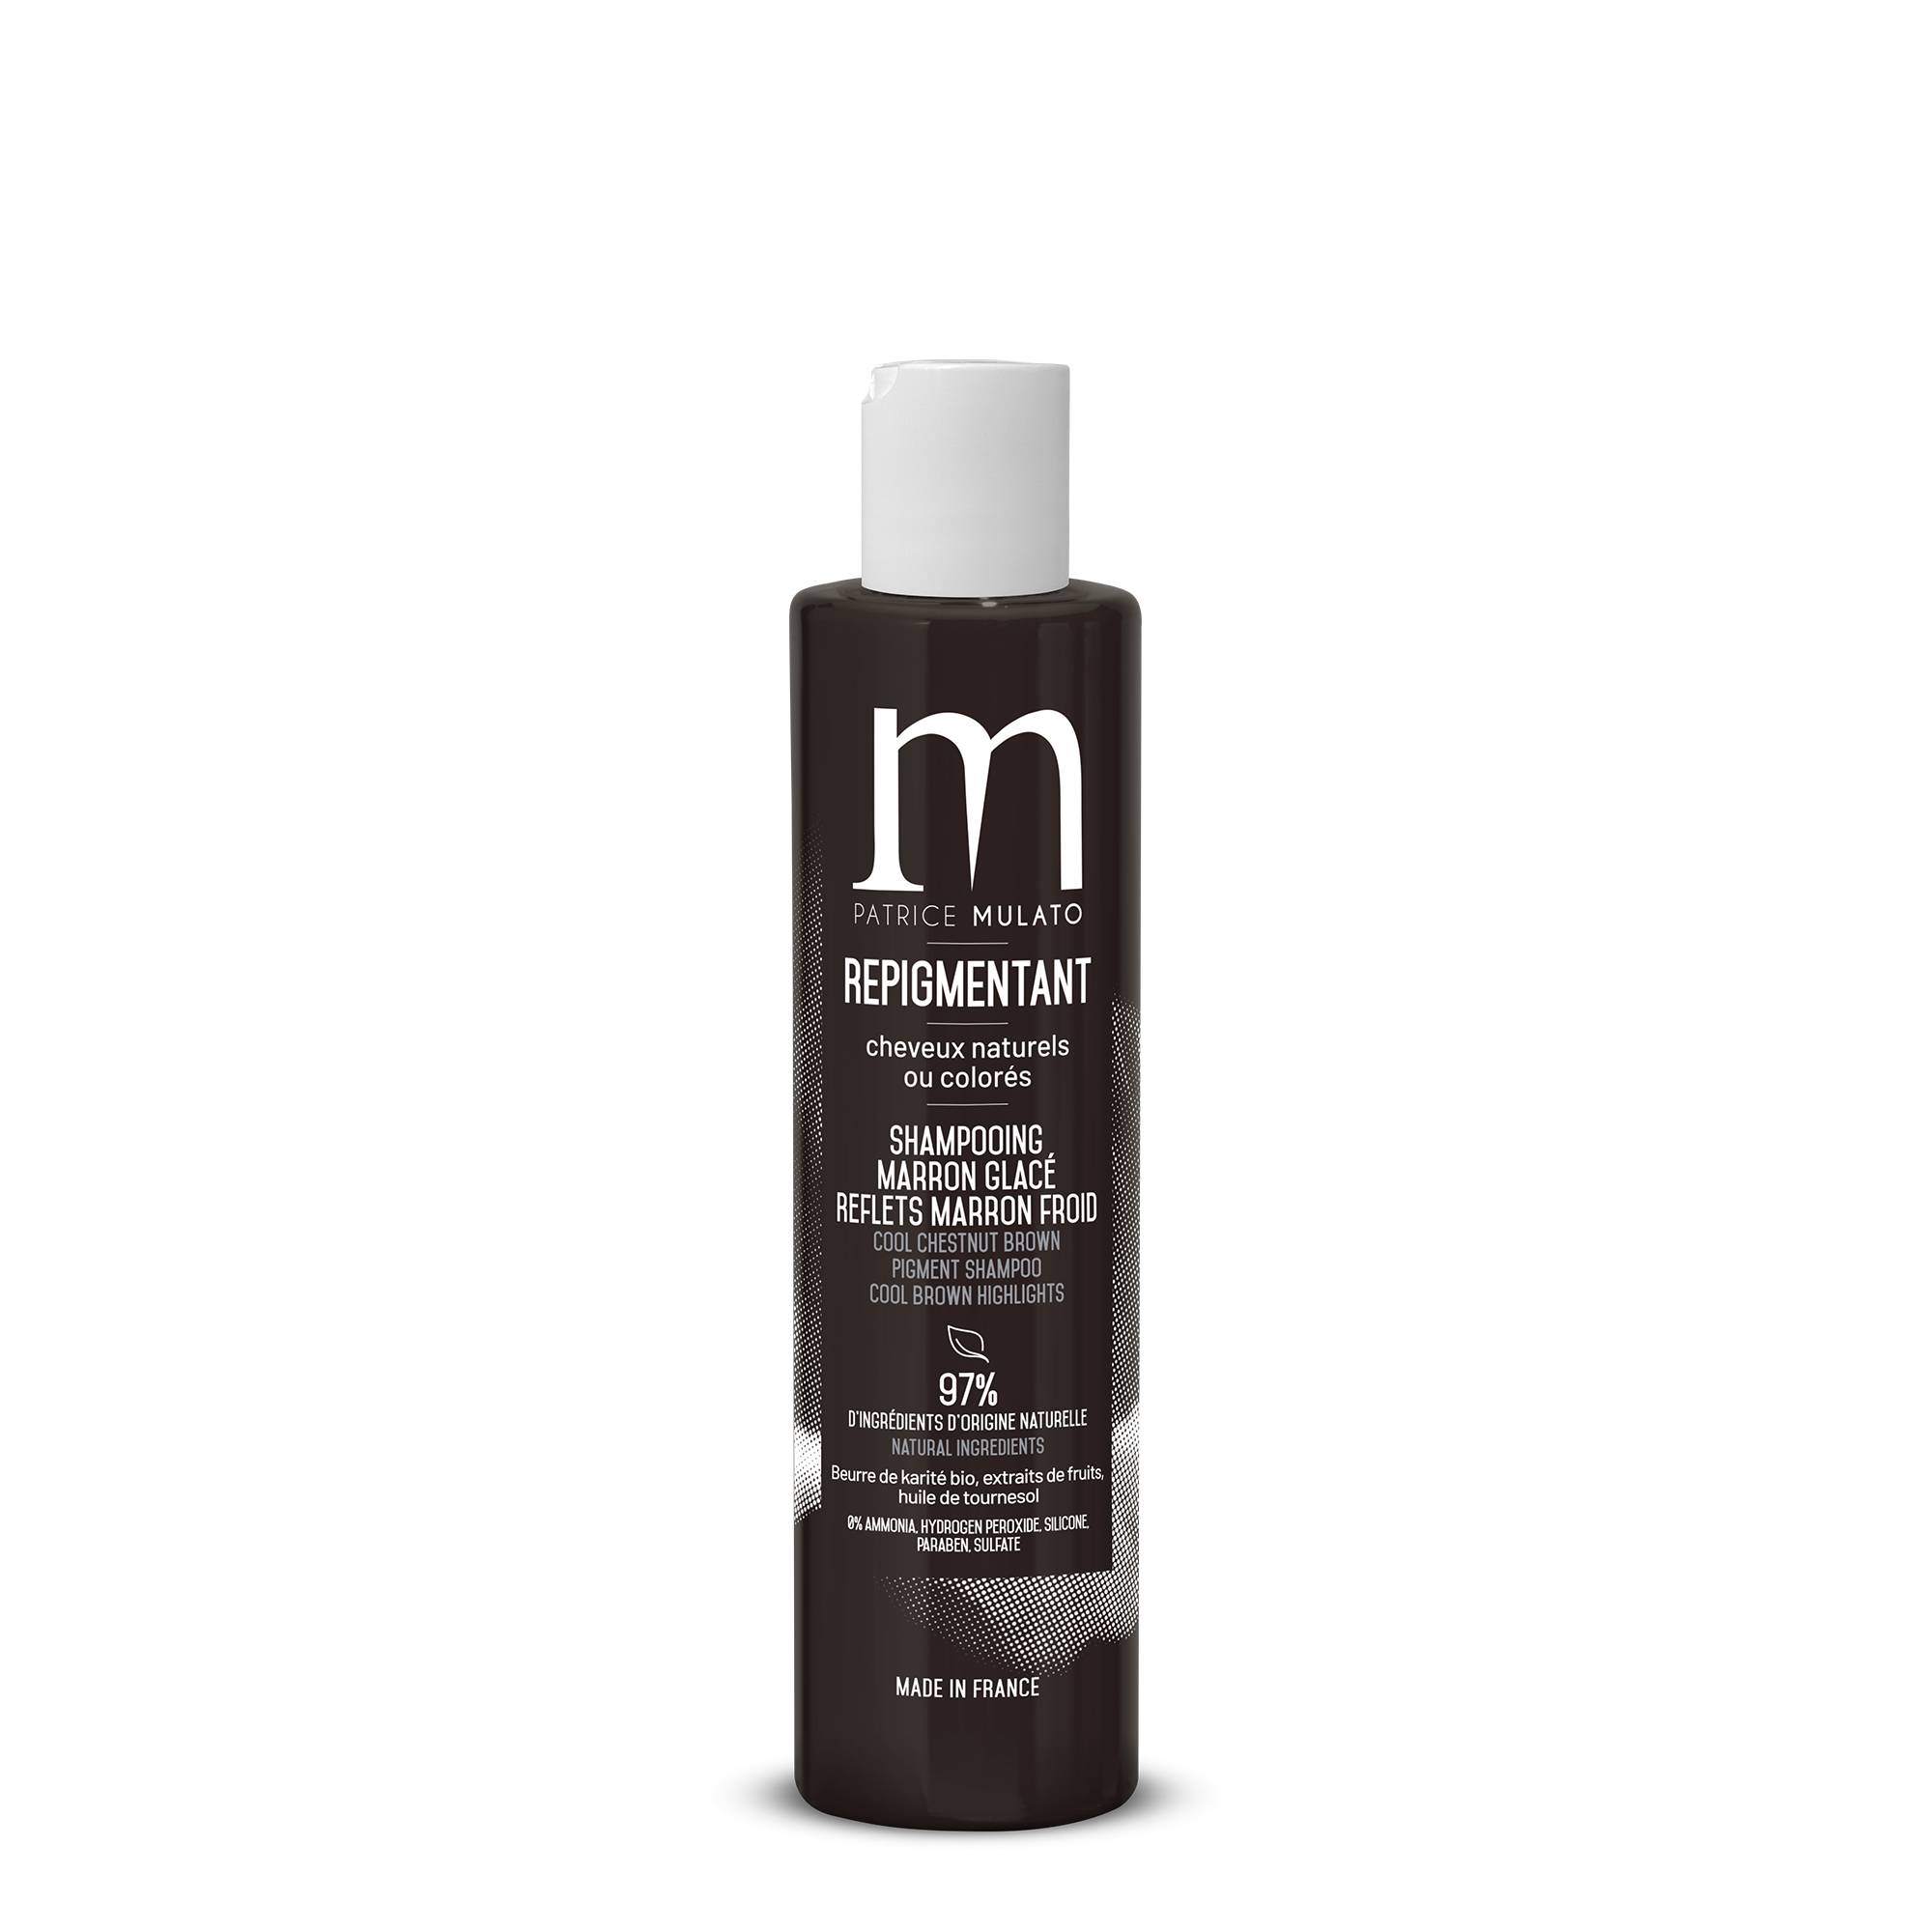 Shampoing Repigmentant Marron glacé - reflets marron froid de la marque Mulato Contenance 200ml - 1